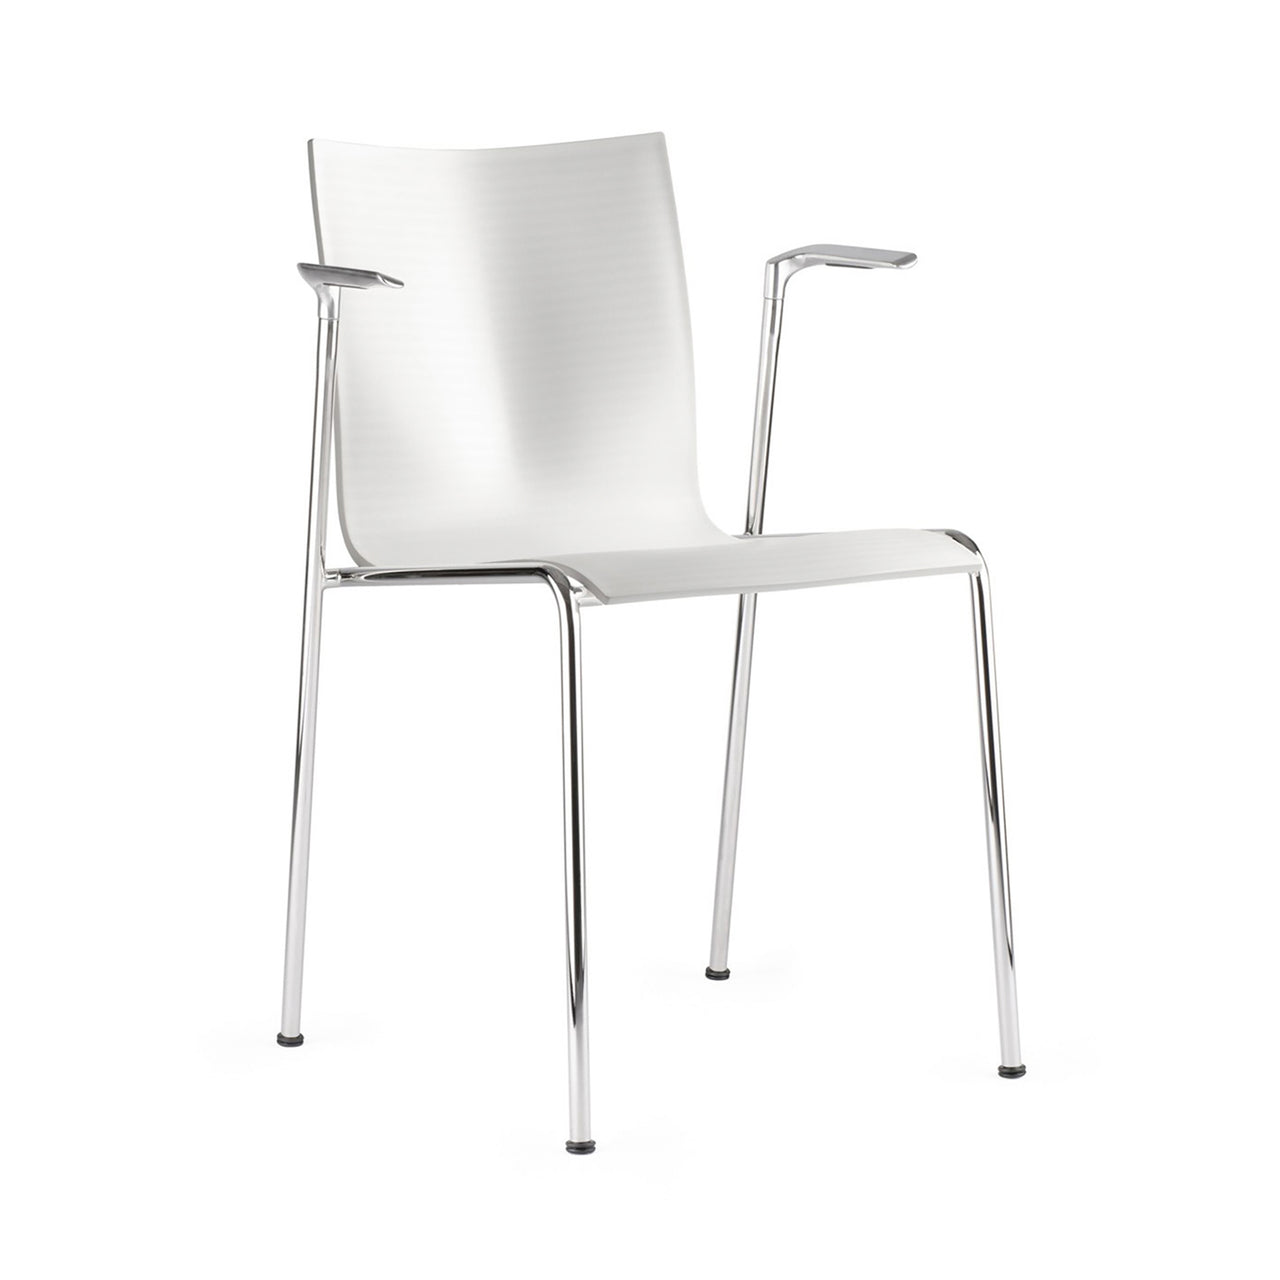 Chairik 113 Armchair: 4-Legs + Plastic + White